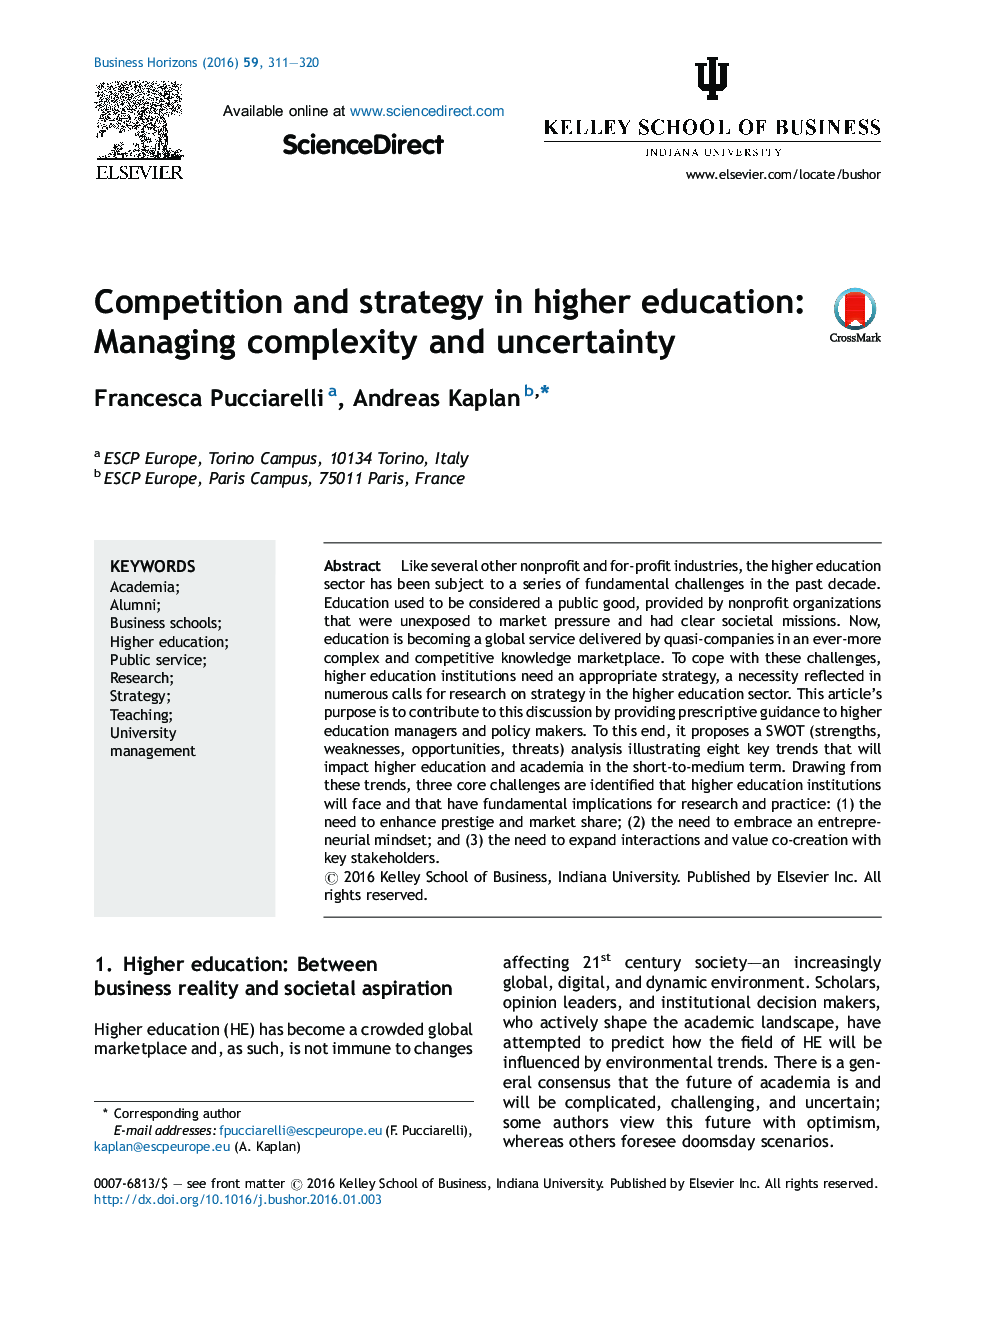 رقابت و استراتژی در آموزش عالی: پیچیدگی مدیریت و عدم قطعیت